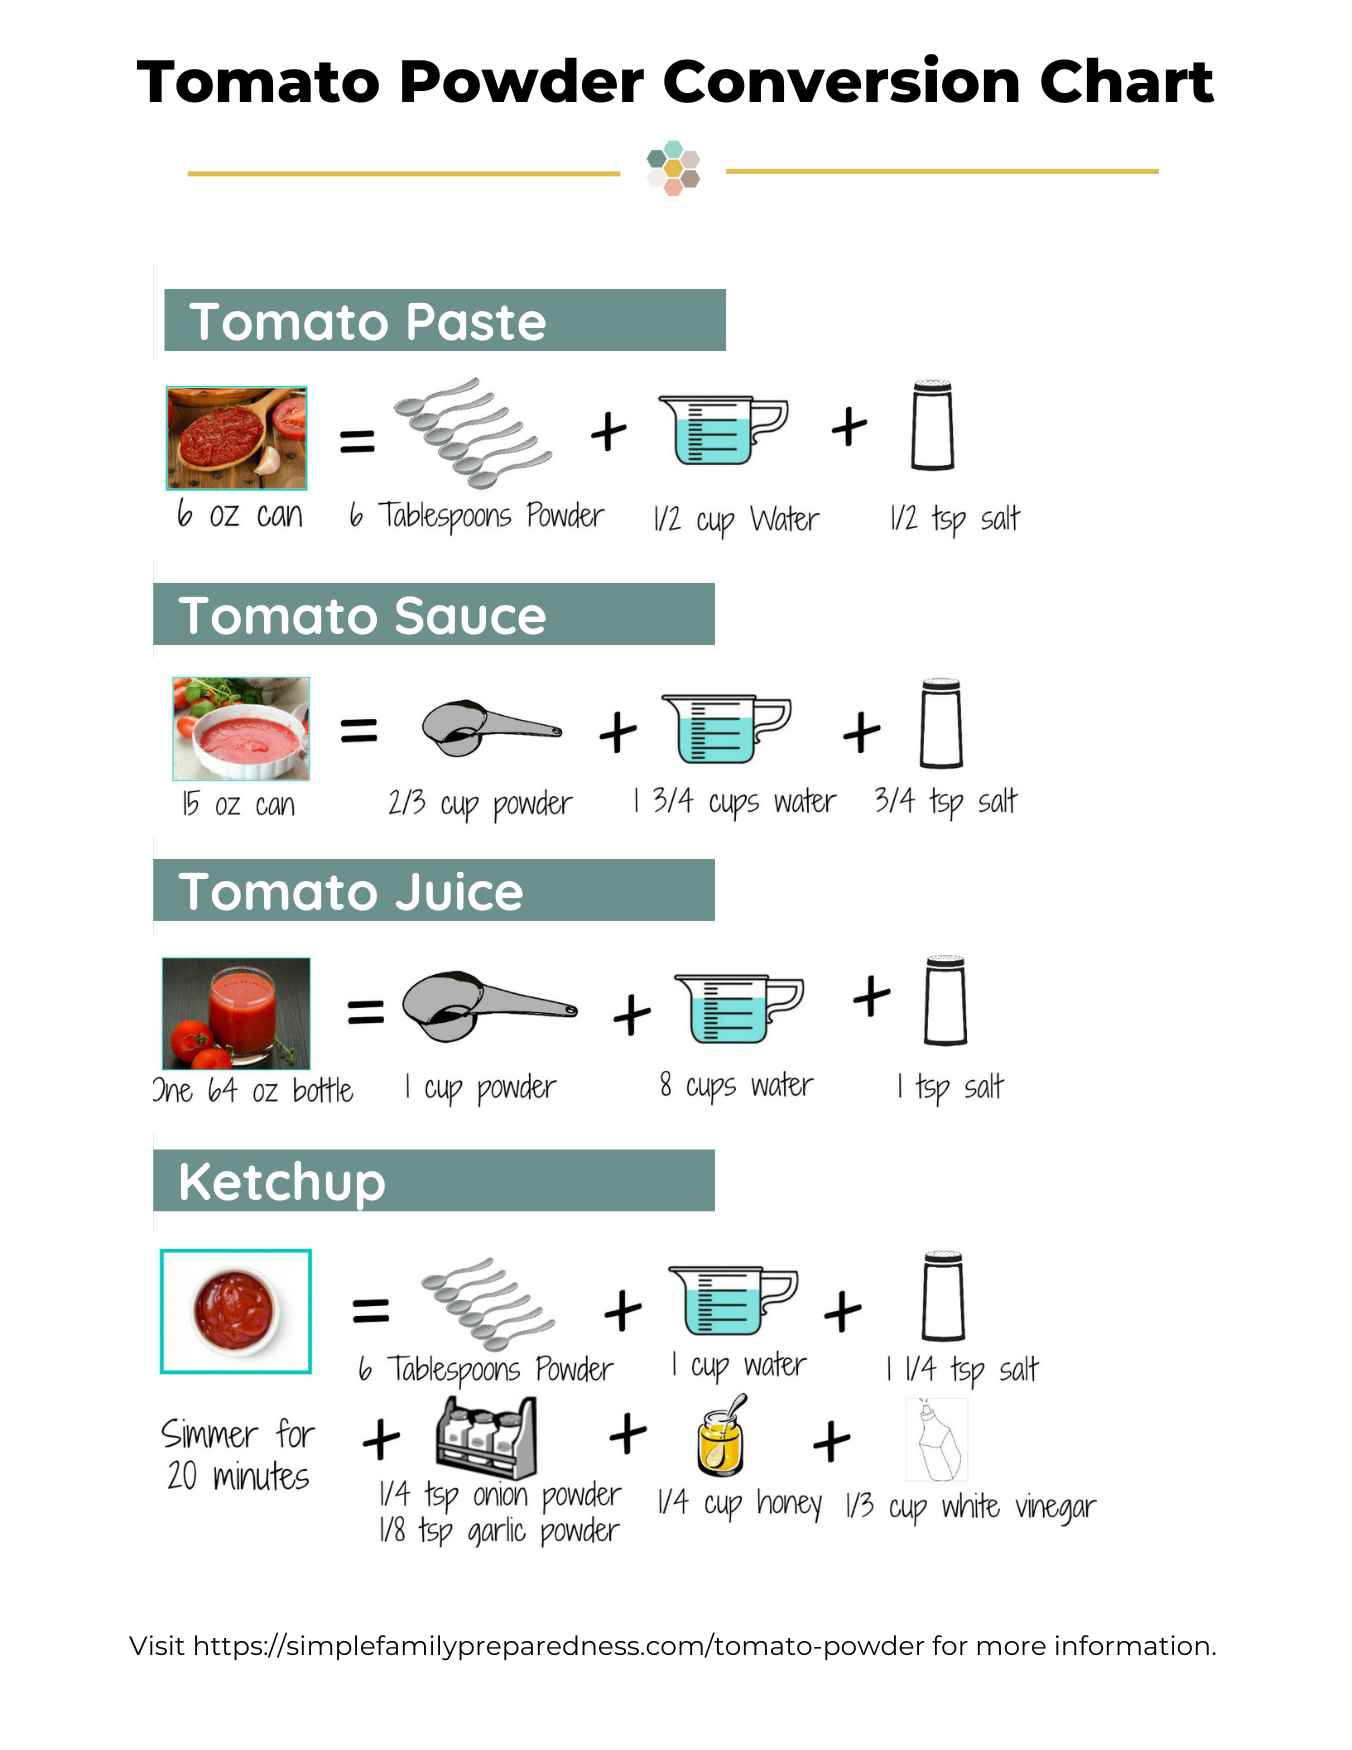 tomato powder conversion chart cheat sheet